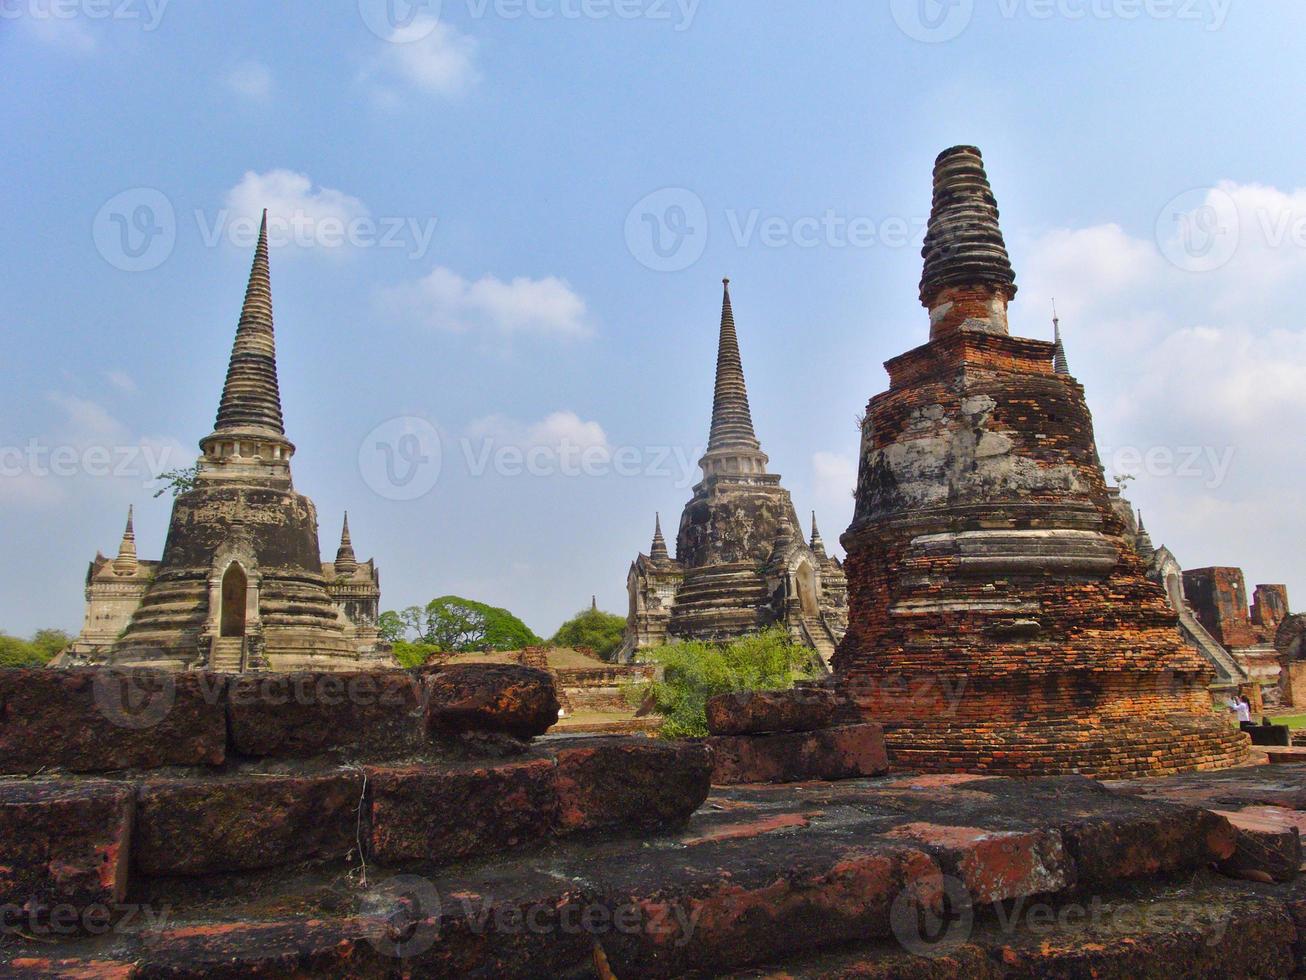 wat phra sri sanphet tempel de heilige tempel is de meest heilige tempel van het grote paleis in de oude hoofdstad van thailand ayutthaya. foto